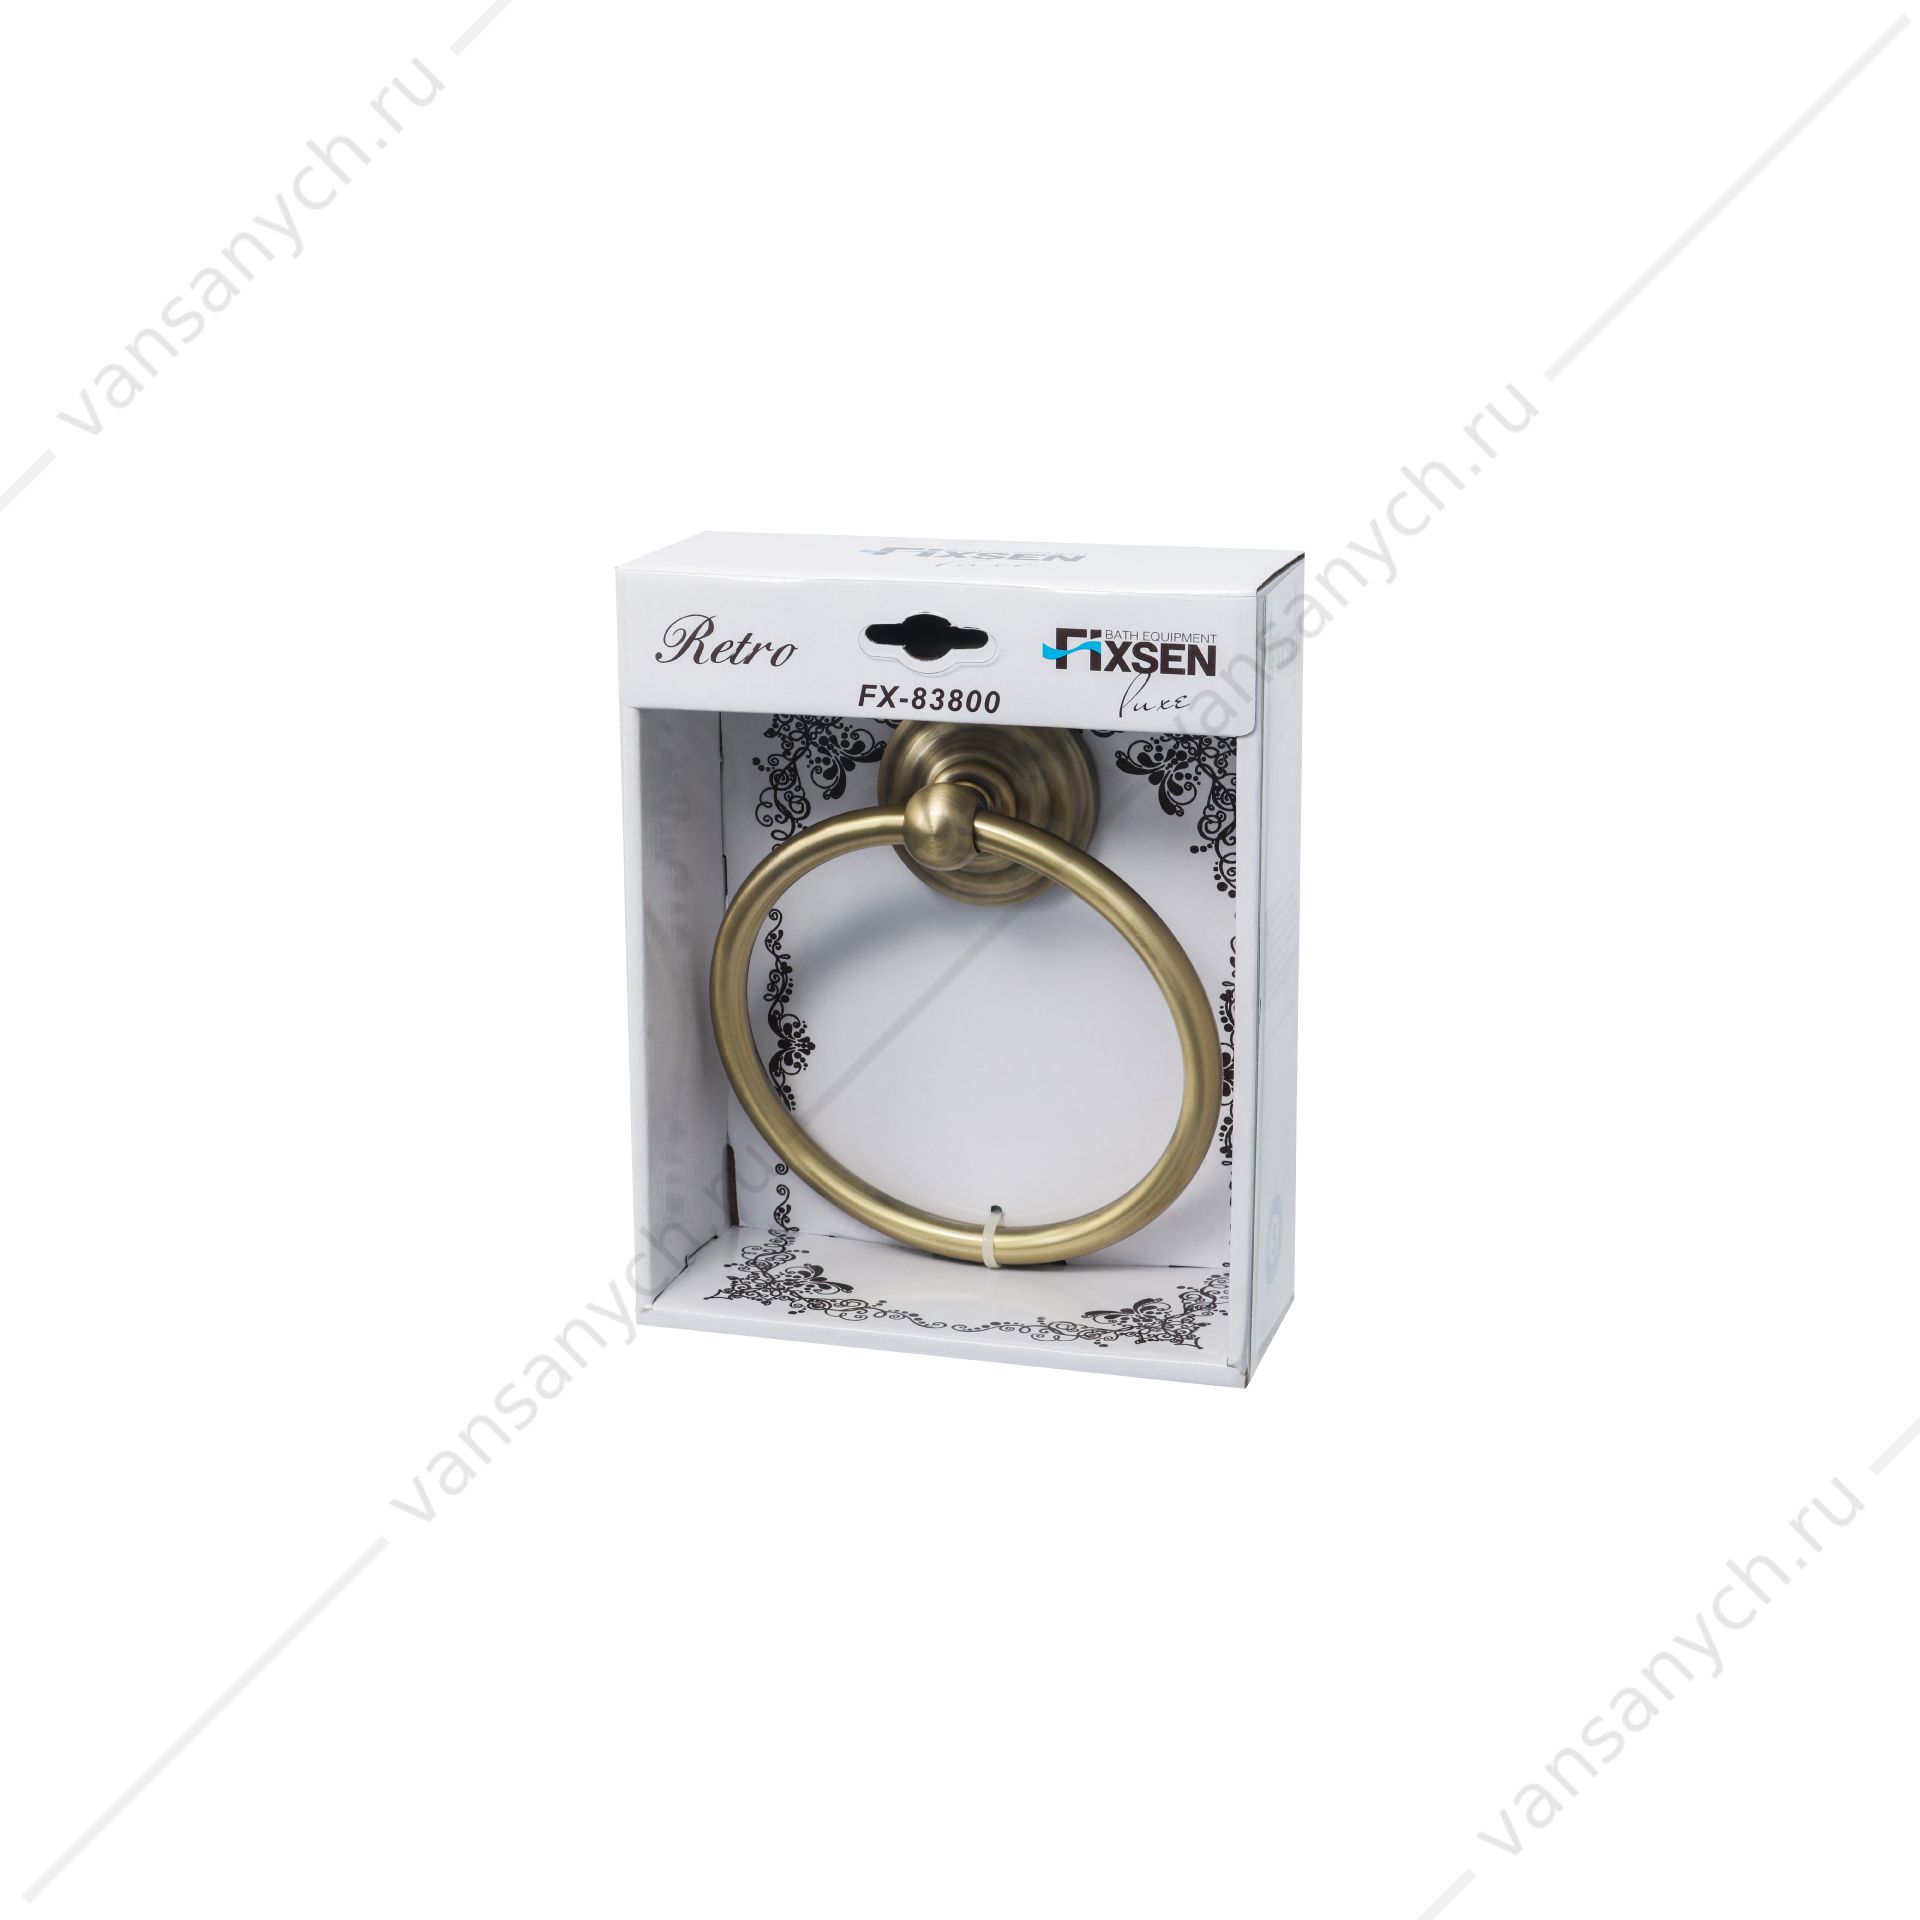 Полотенцедержатель кольцо Fixsen Retro Fixsen(Чехия) купить в Тюмени (Ван Саныч™)